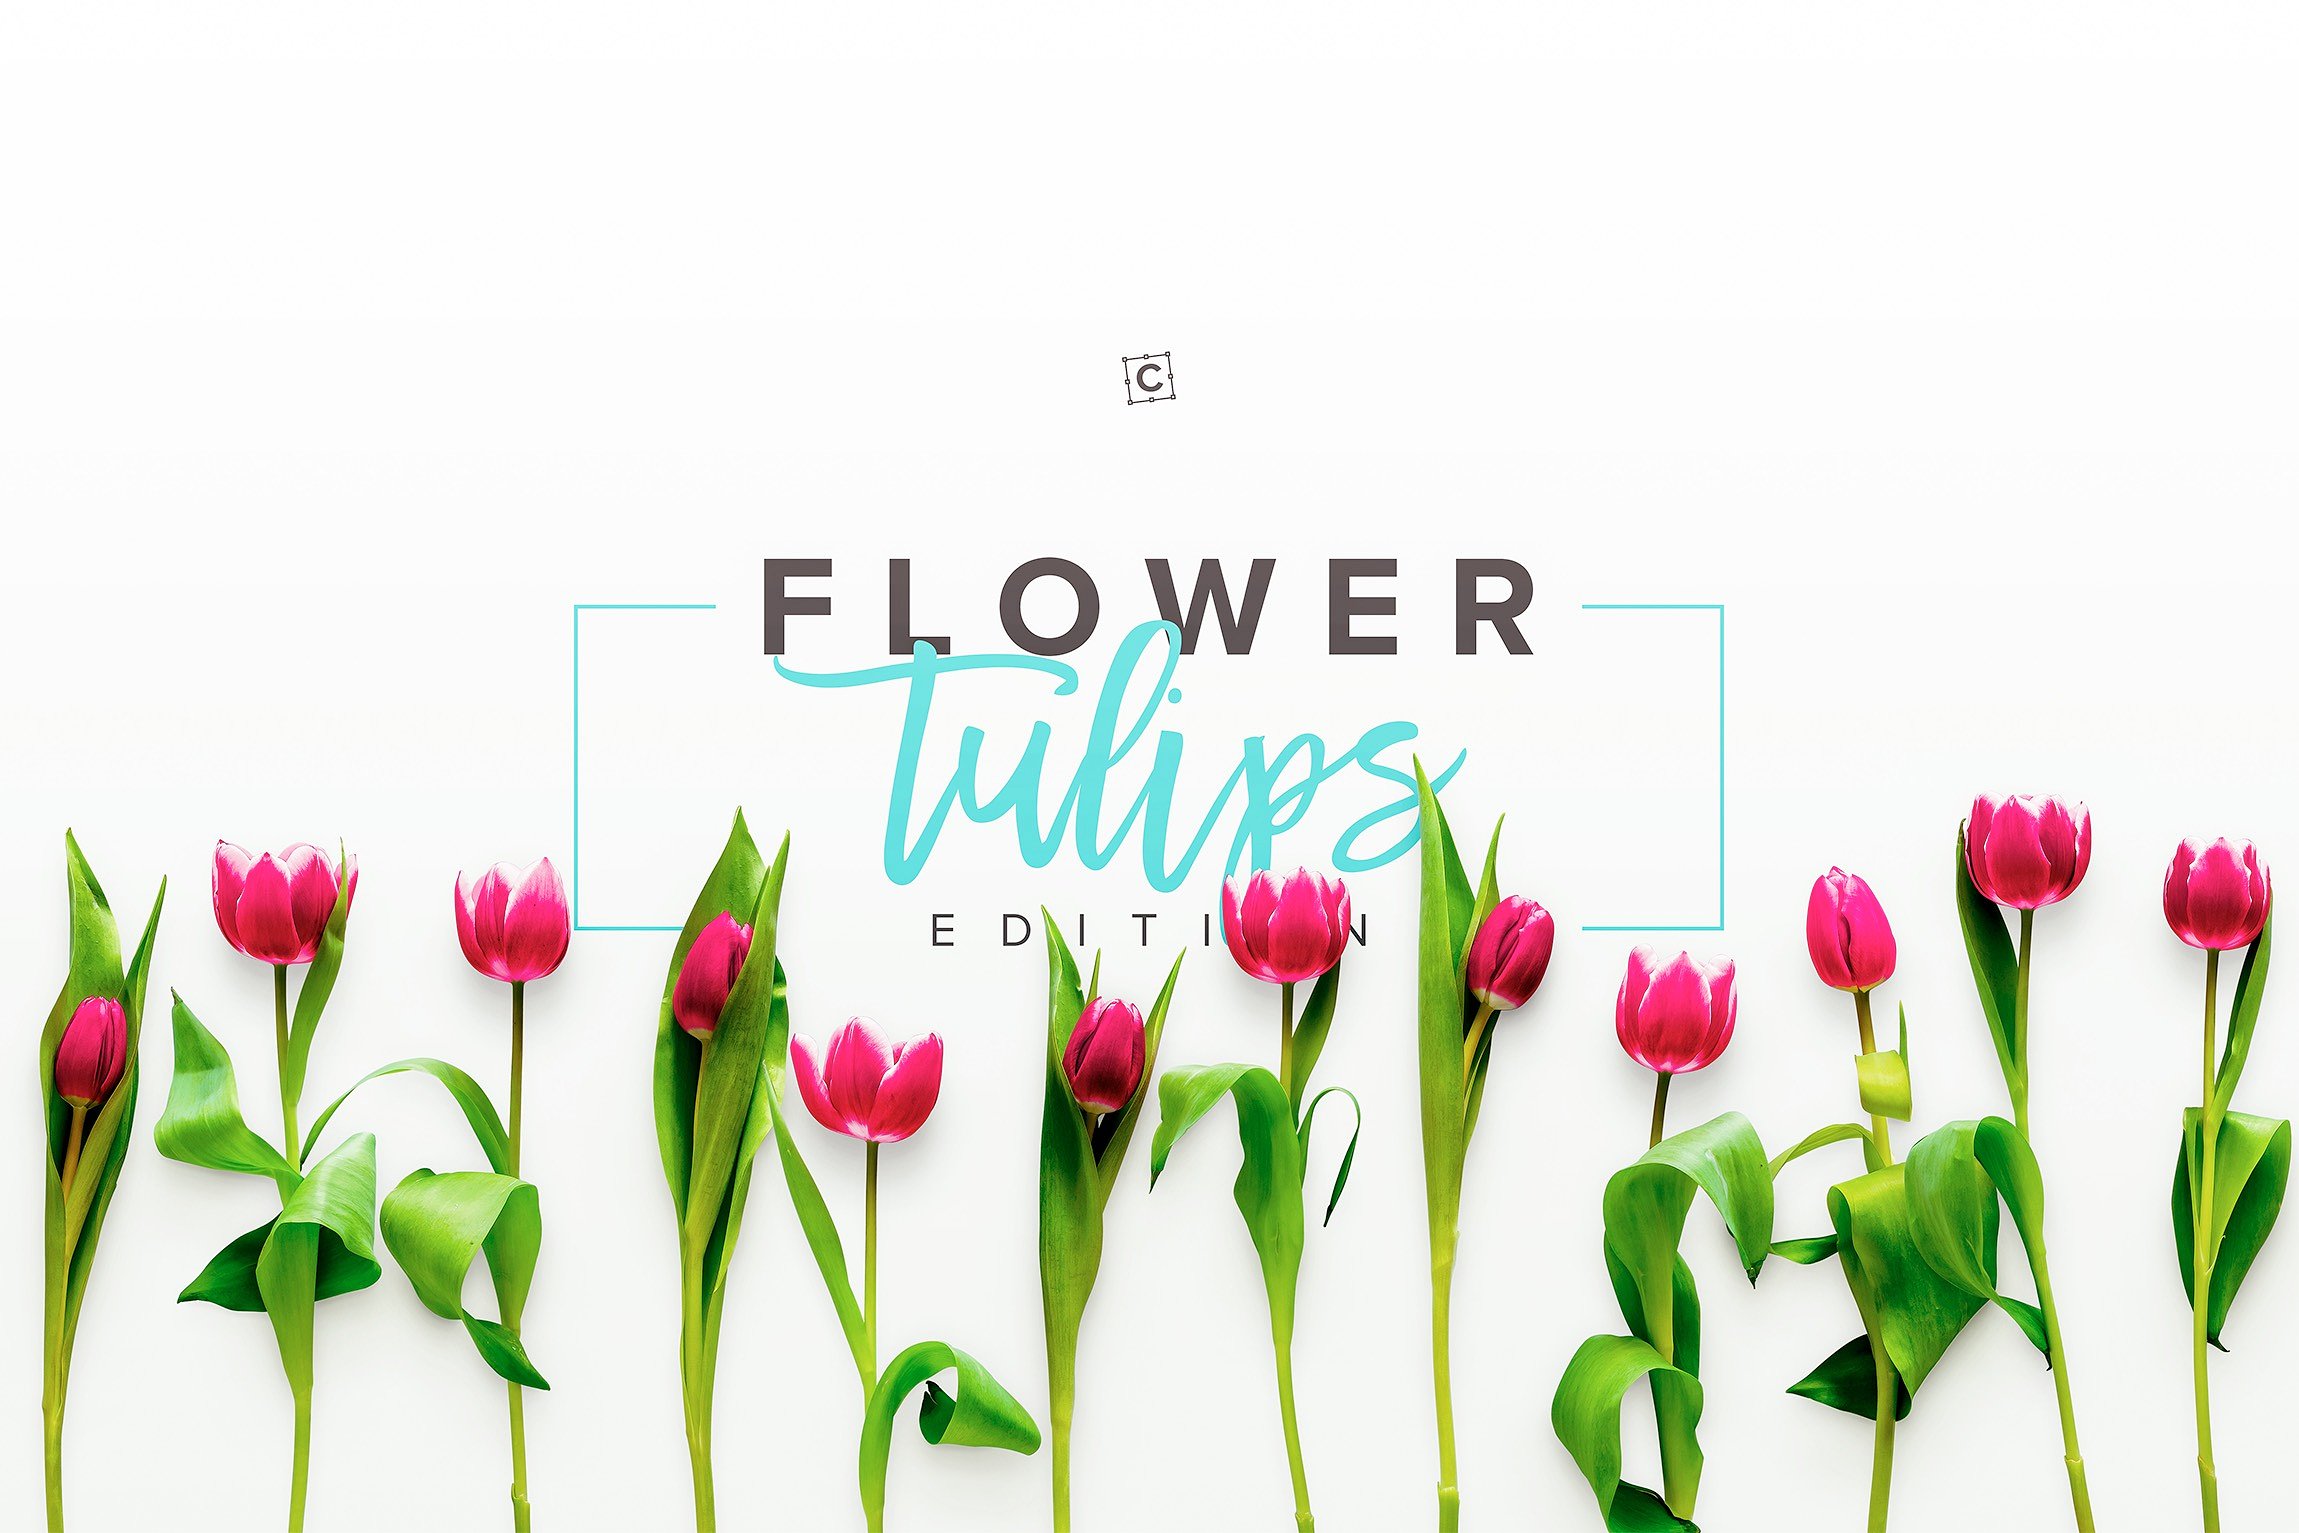 郁金香花卉场景样机 Flower Tulips Editio